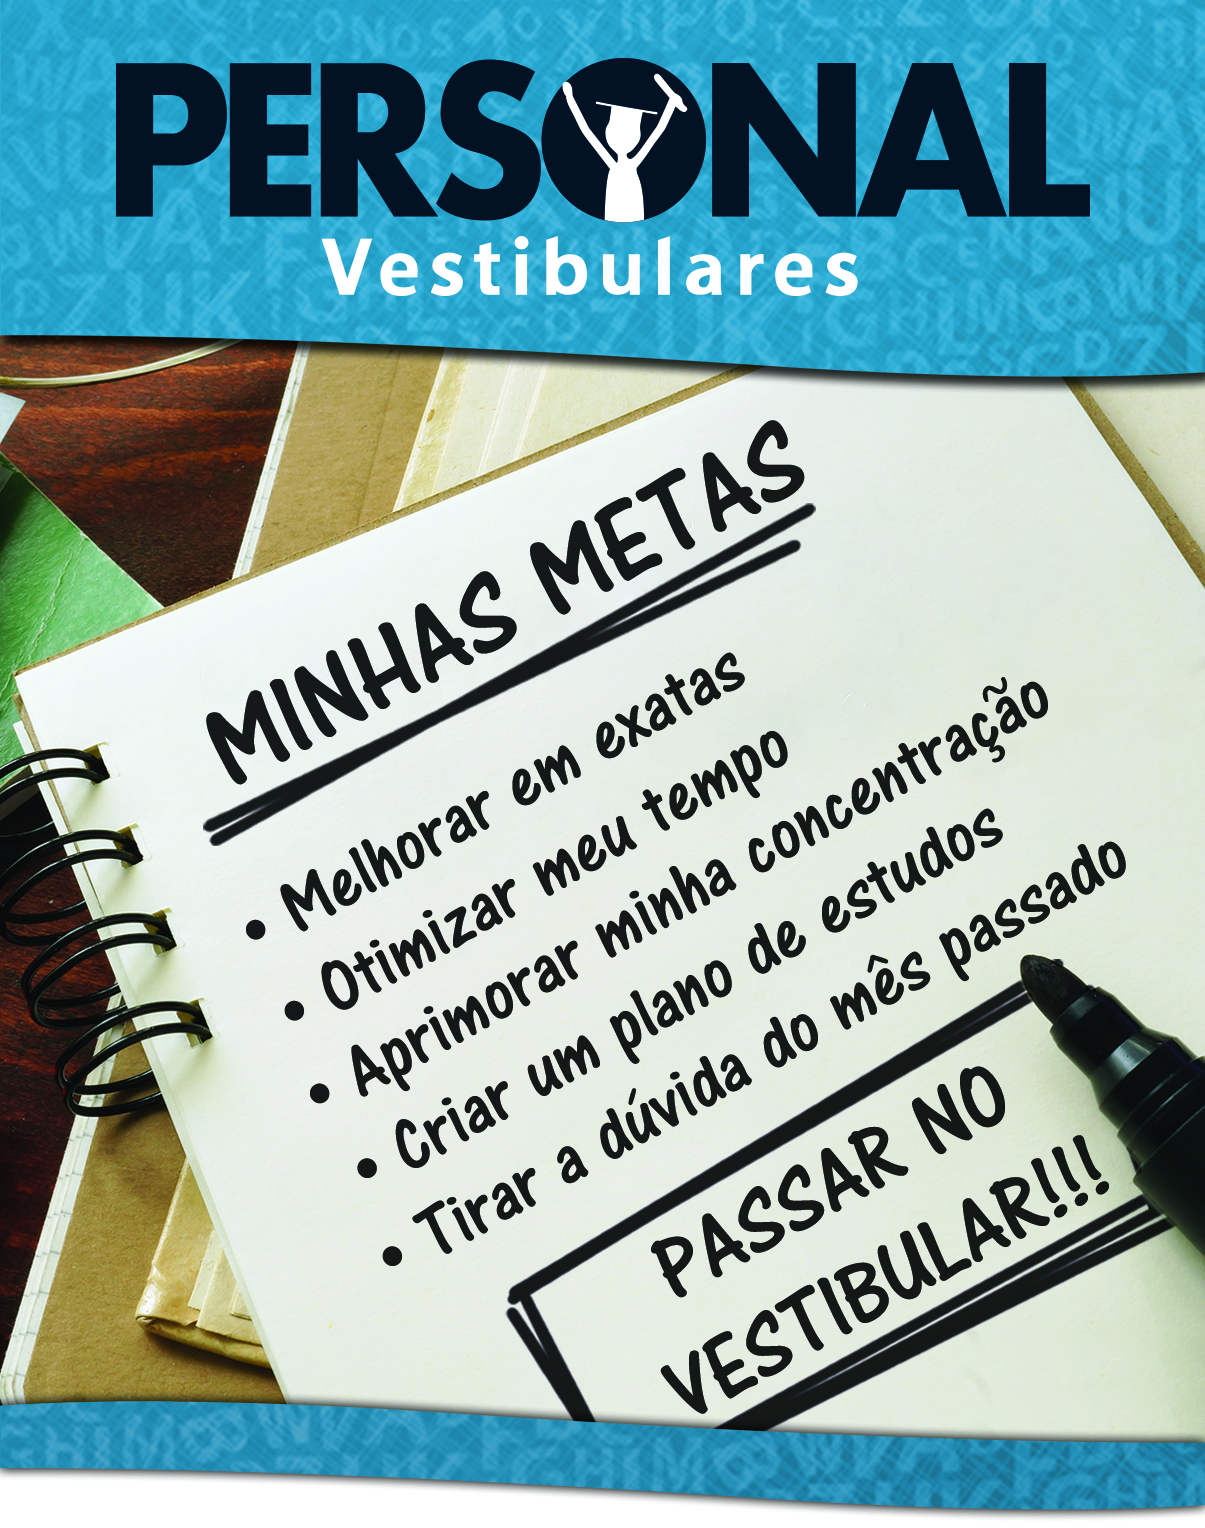 Personal Vestibulares - Curso Pr Vestibular Personalizado em So Paulo